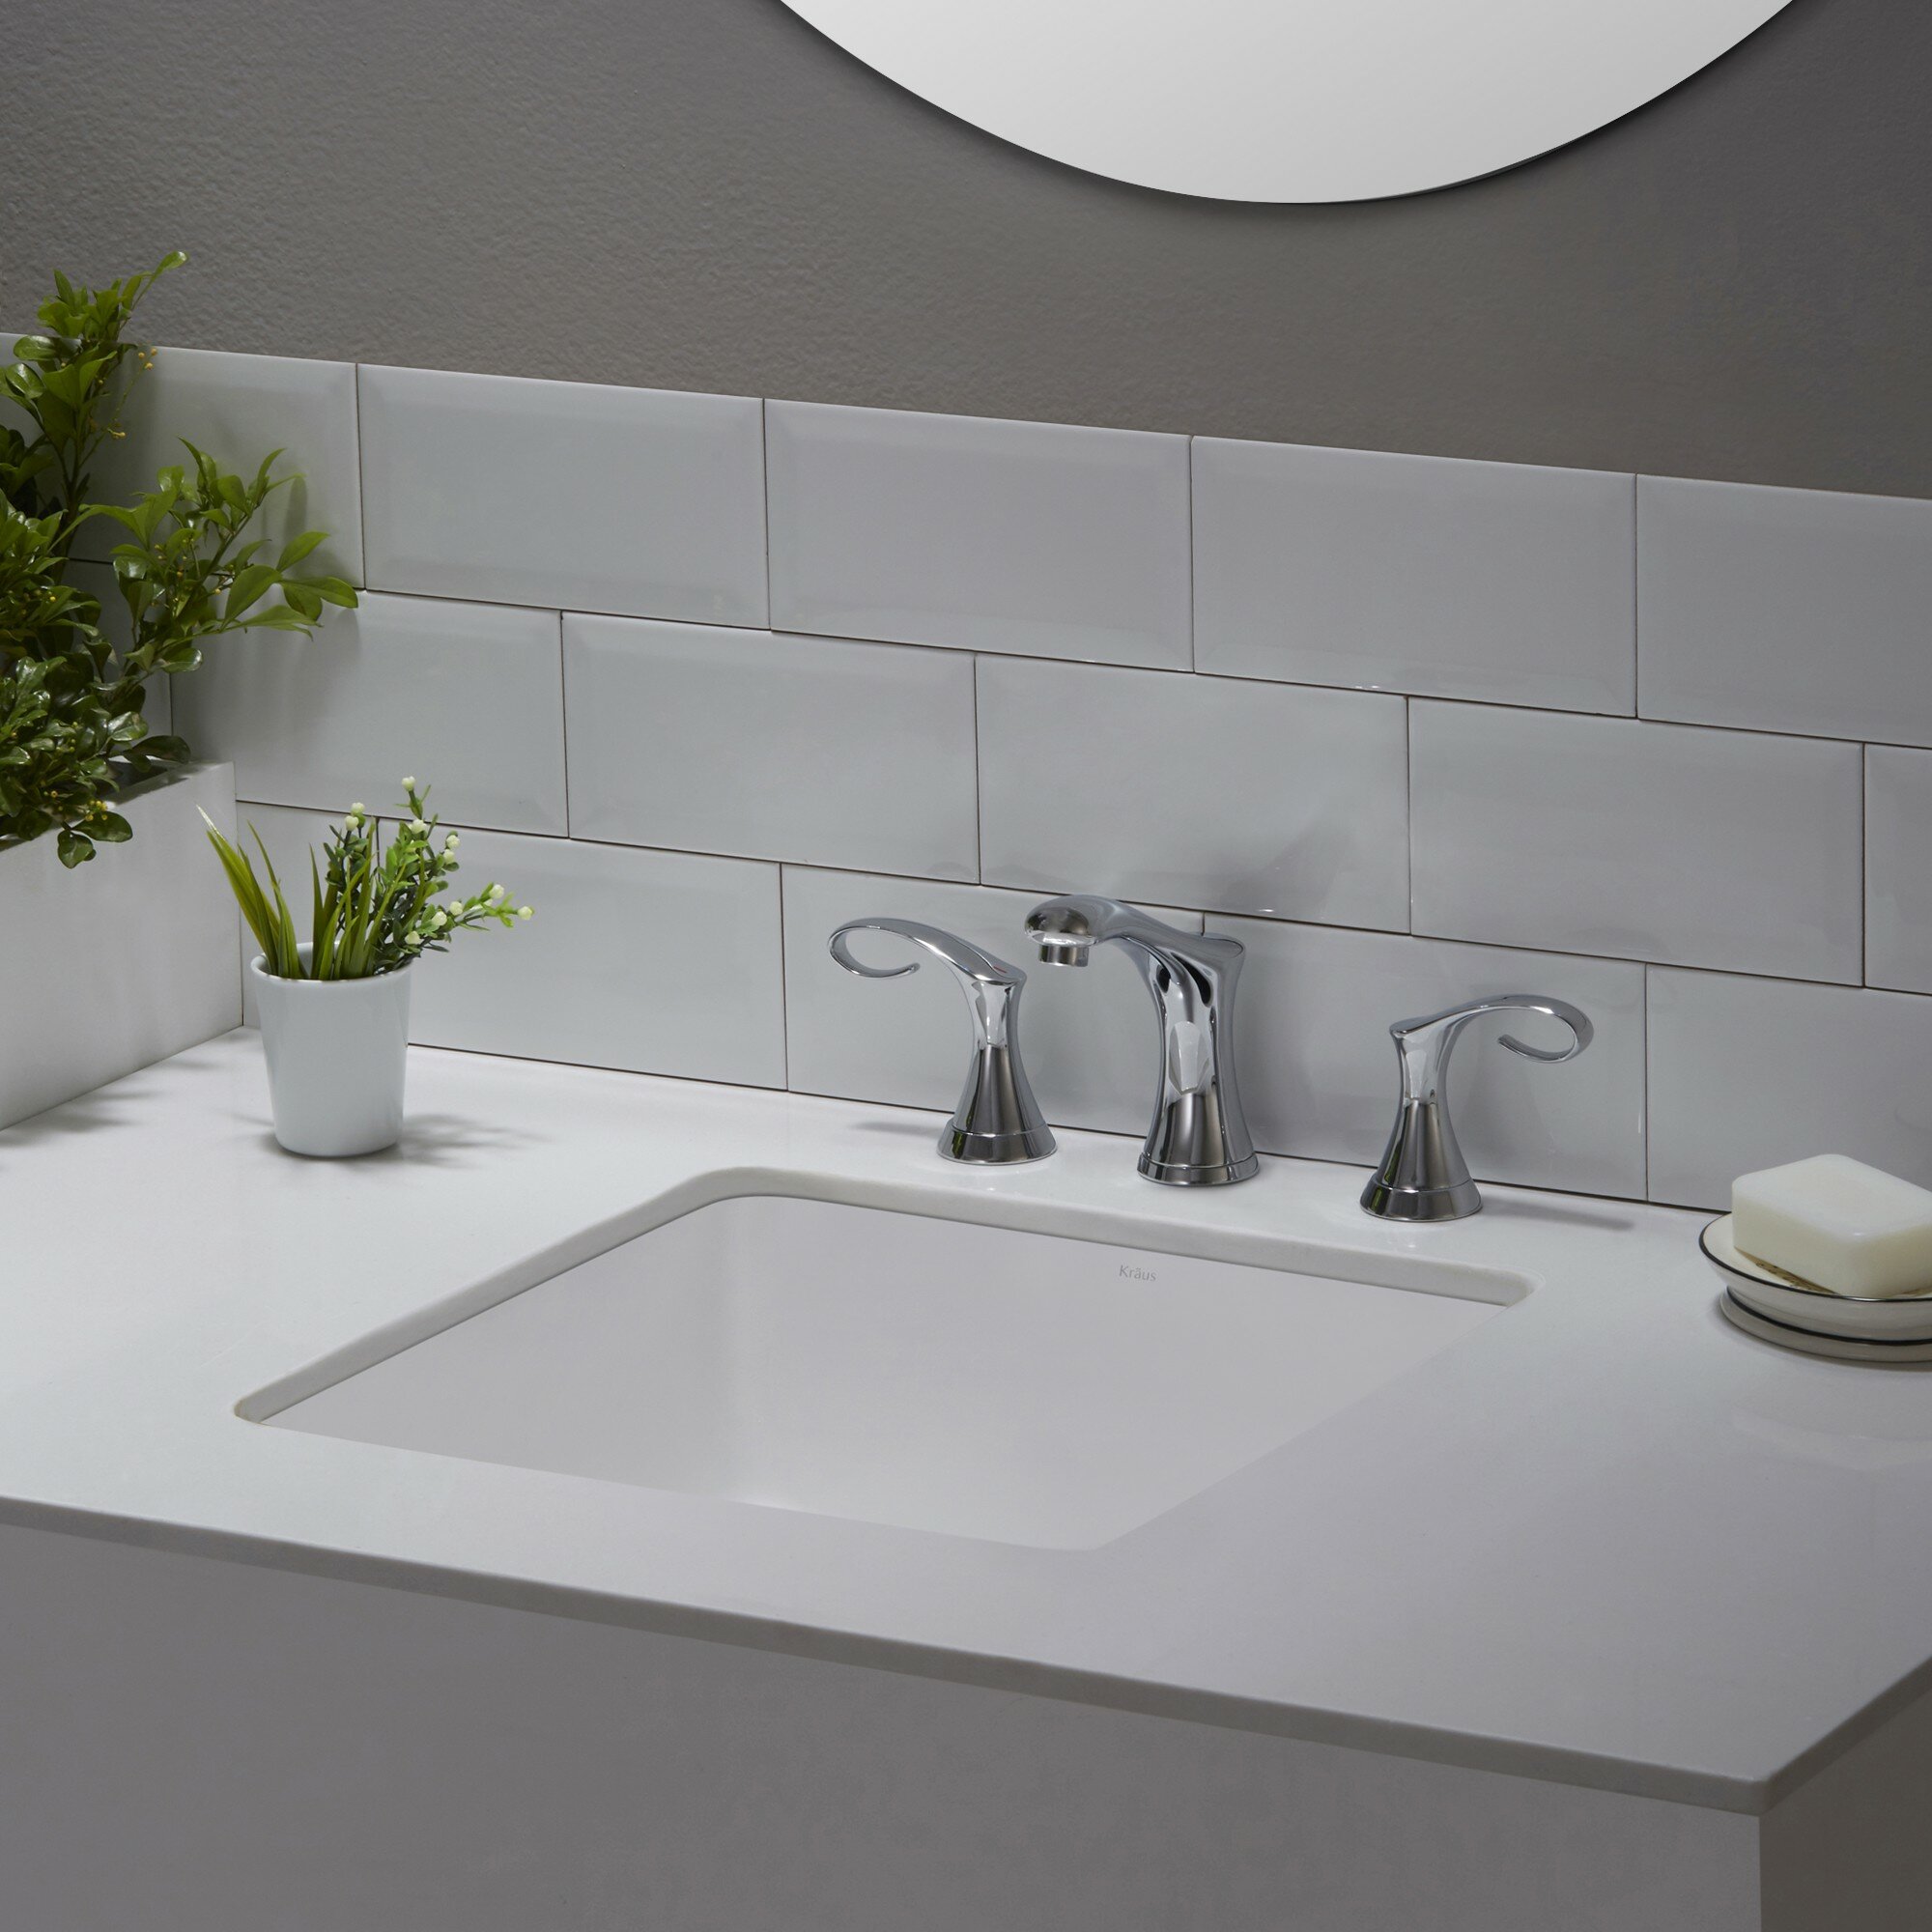 Elavo™ Ceramic Square Undermount Bathroom Sink with